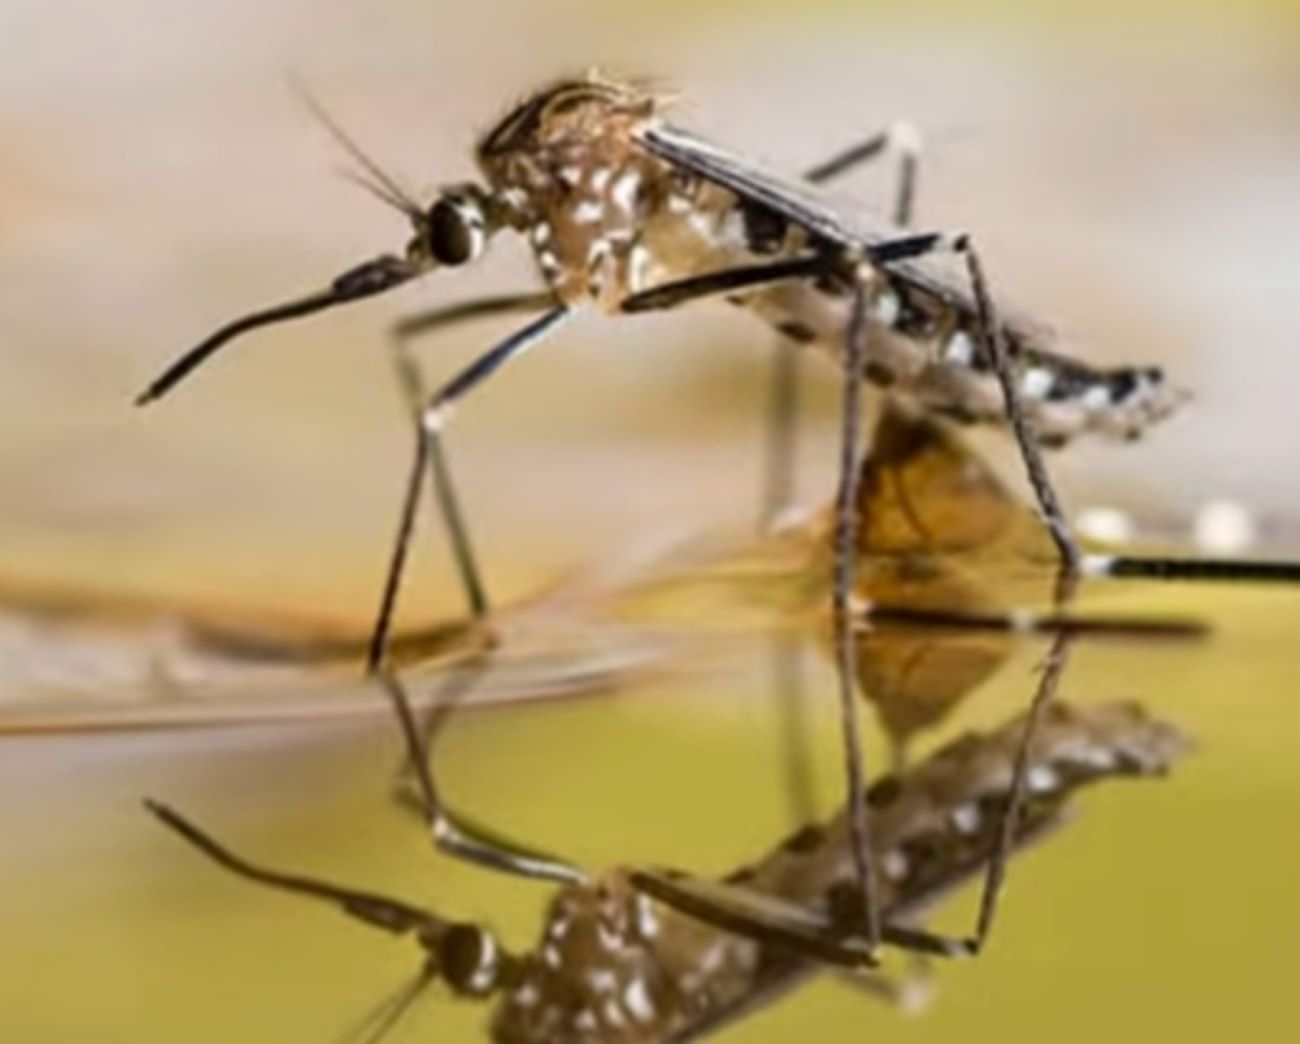 Bingung Cara Ngusir Nyamuk, Coba Pakai 5 Bahan Alami Ini, Ampuh lho 